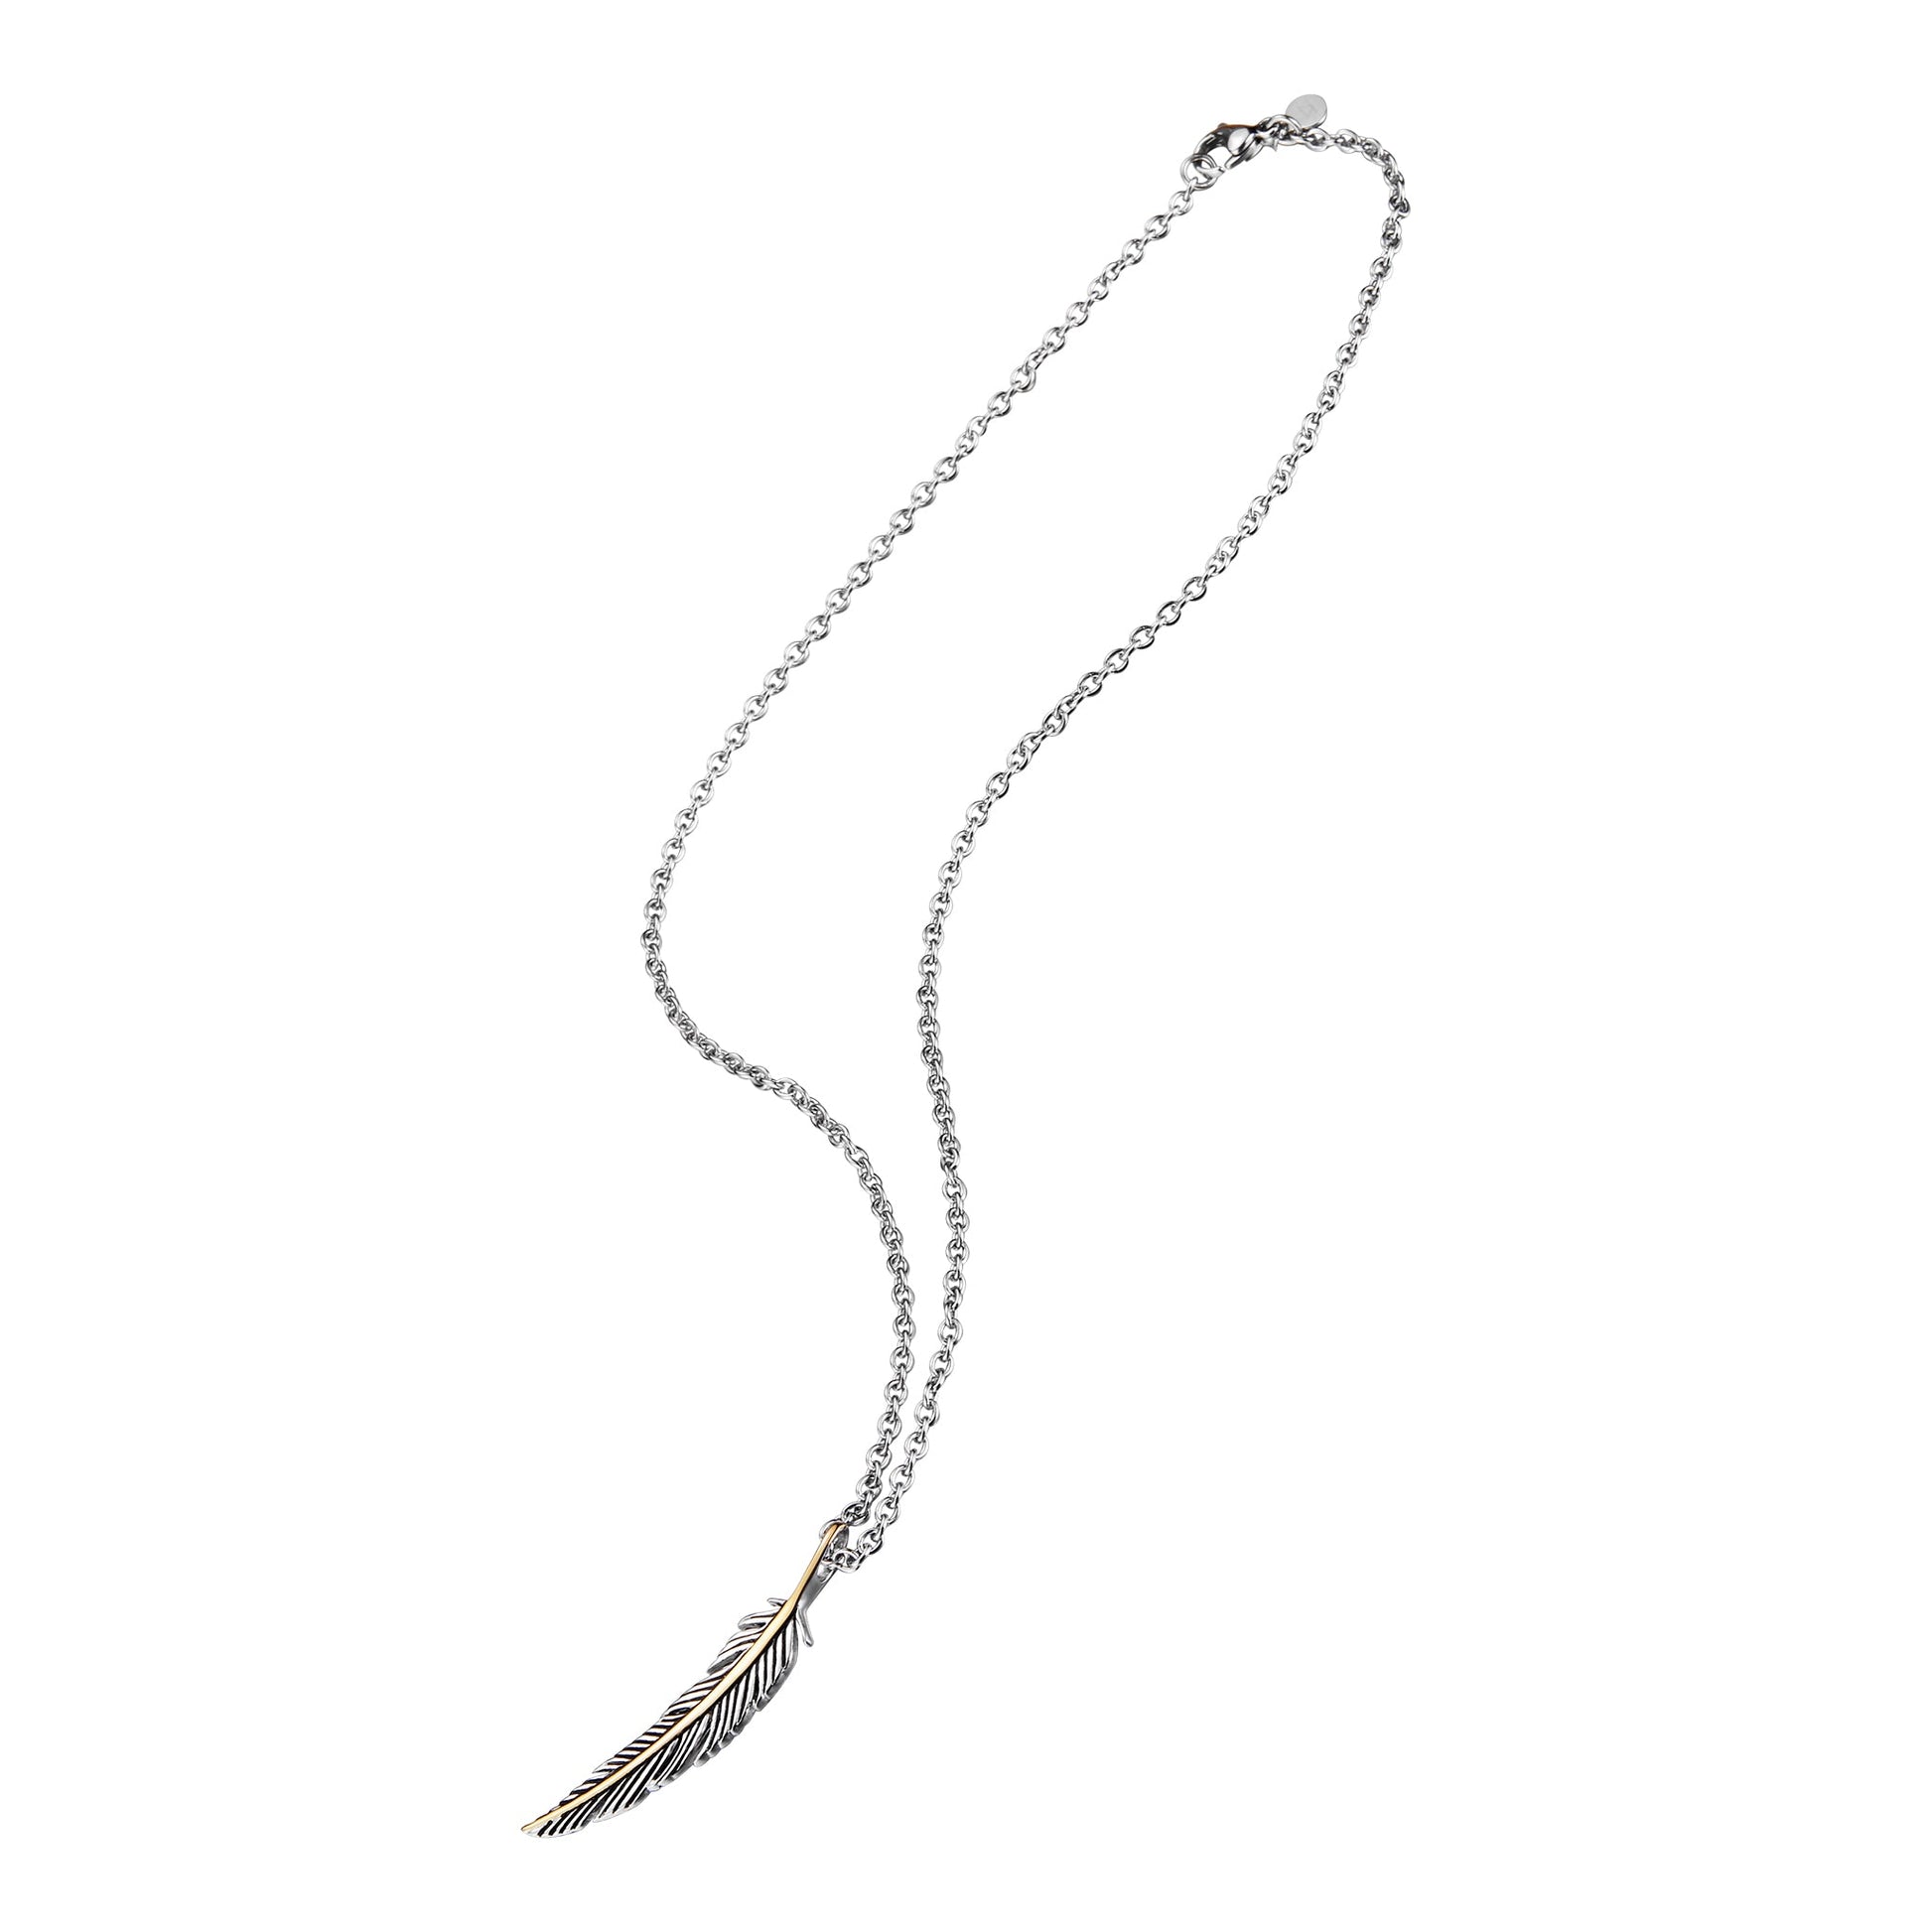 ZFNL005G ZINK Women's Necklaces